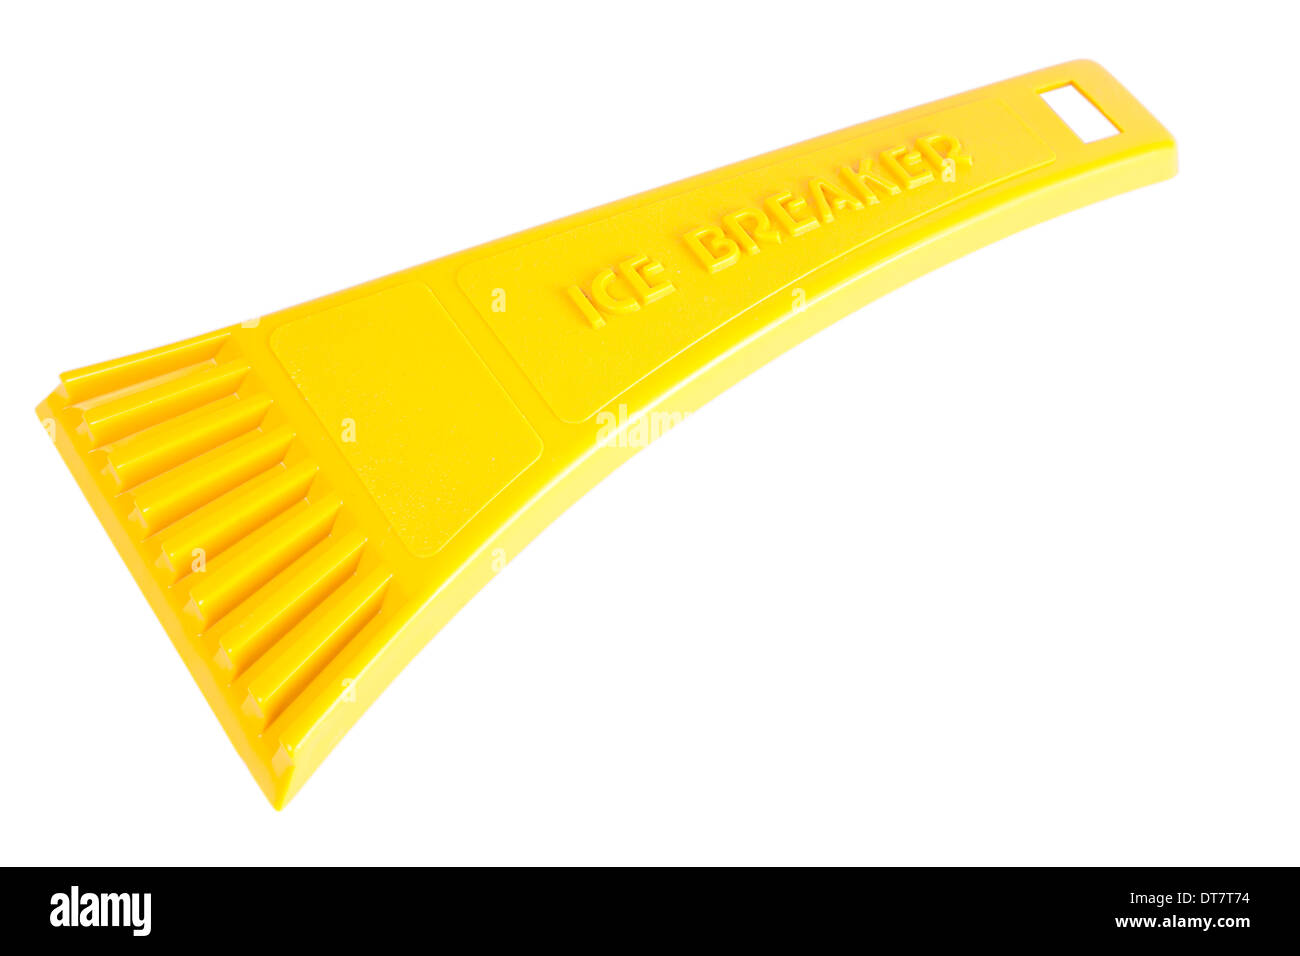 Grattoir à glace jaune/broyeur pour les voitures isolé sur fond blanc avec clipping path Banque D'Images